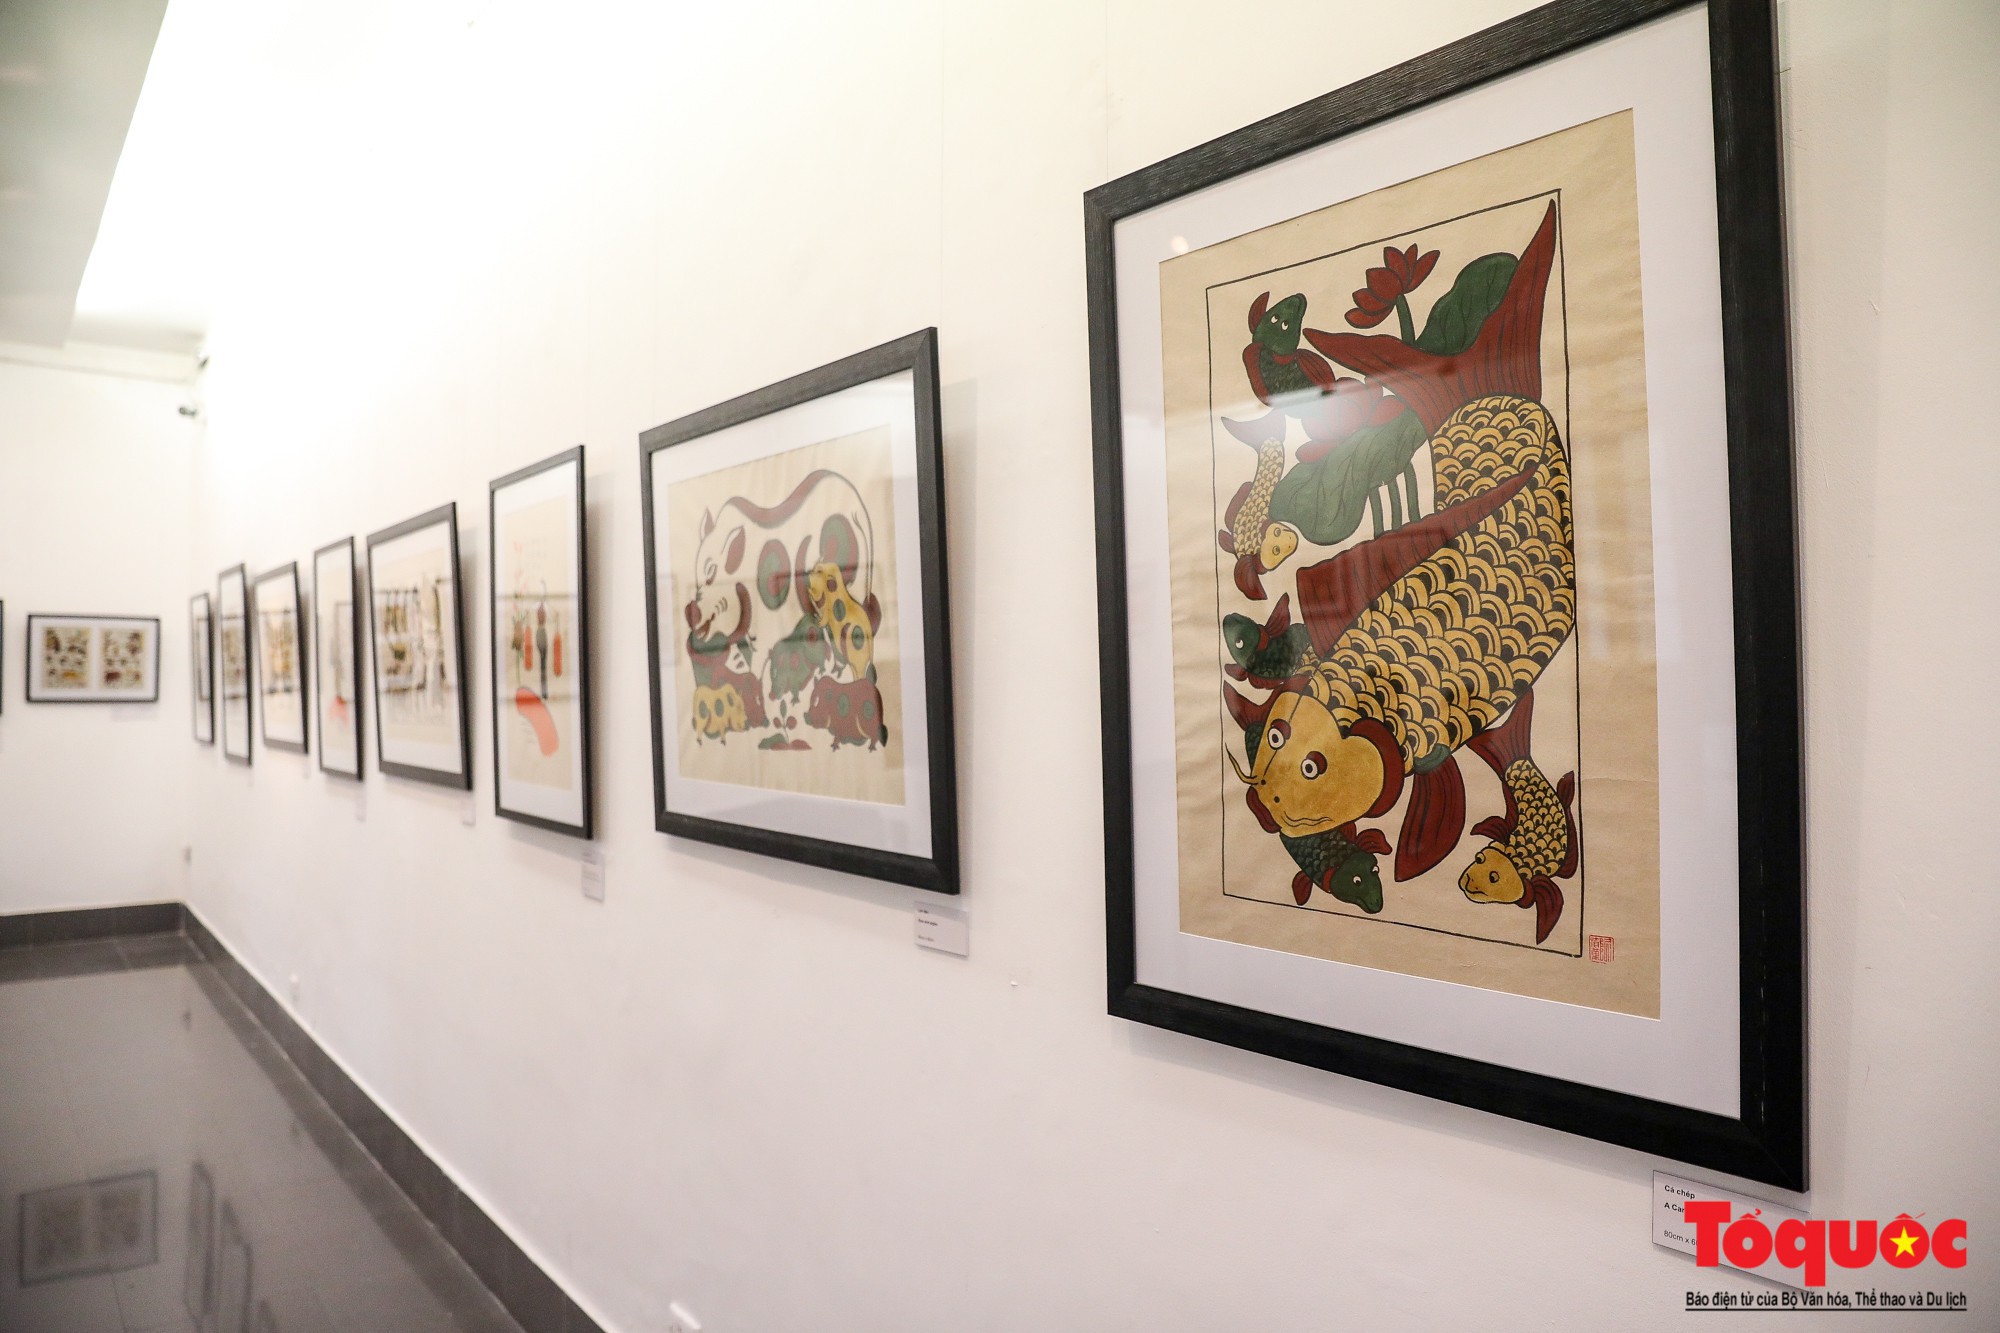 Khai mạc triển lãm “Tranh dân gian Đông hồ xưa và nay”: Trưng bày hơn 100 hiện vật của tranh dân gian Đông Hồ - Ảnh 10.